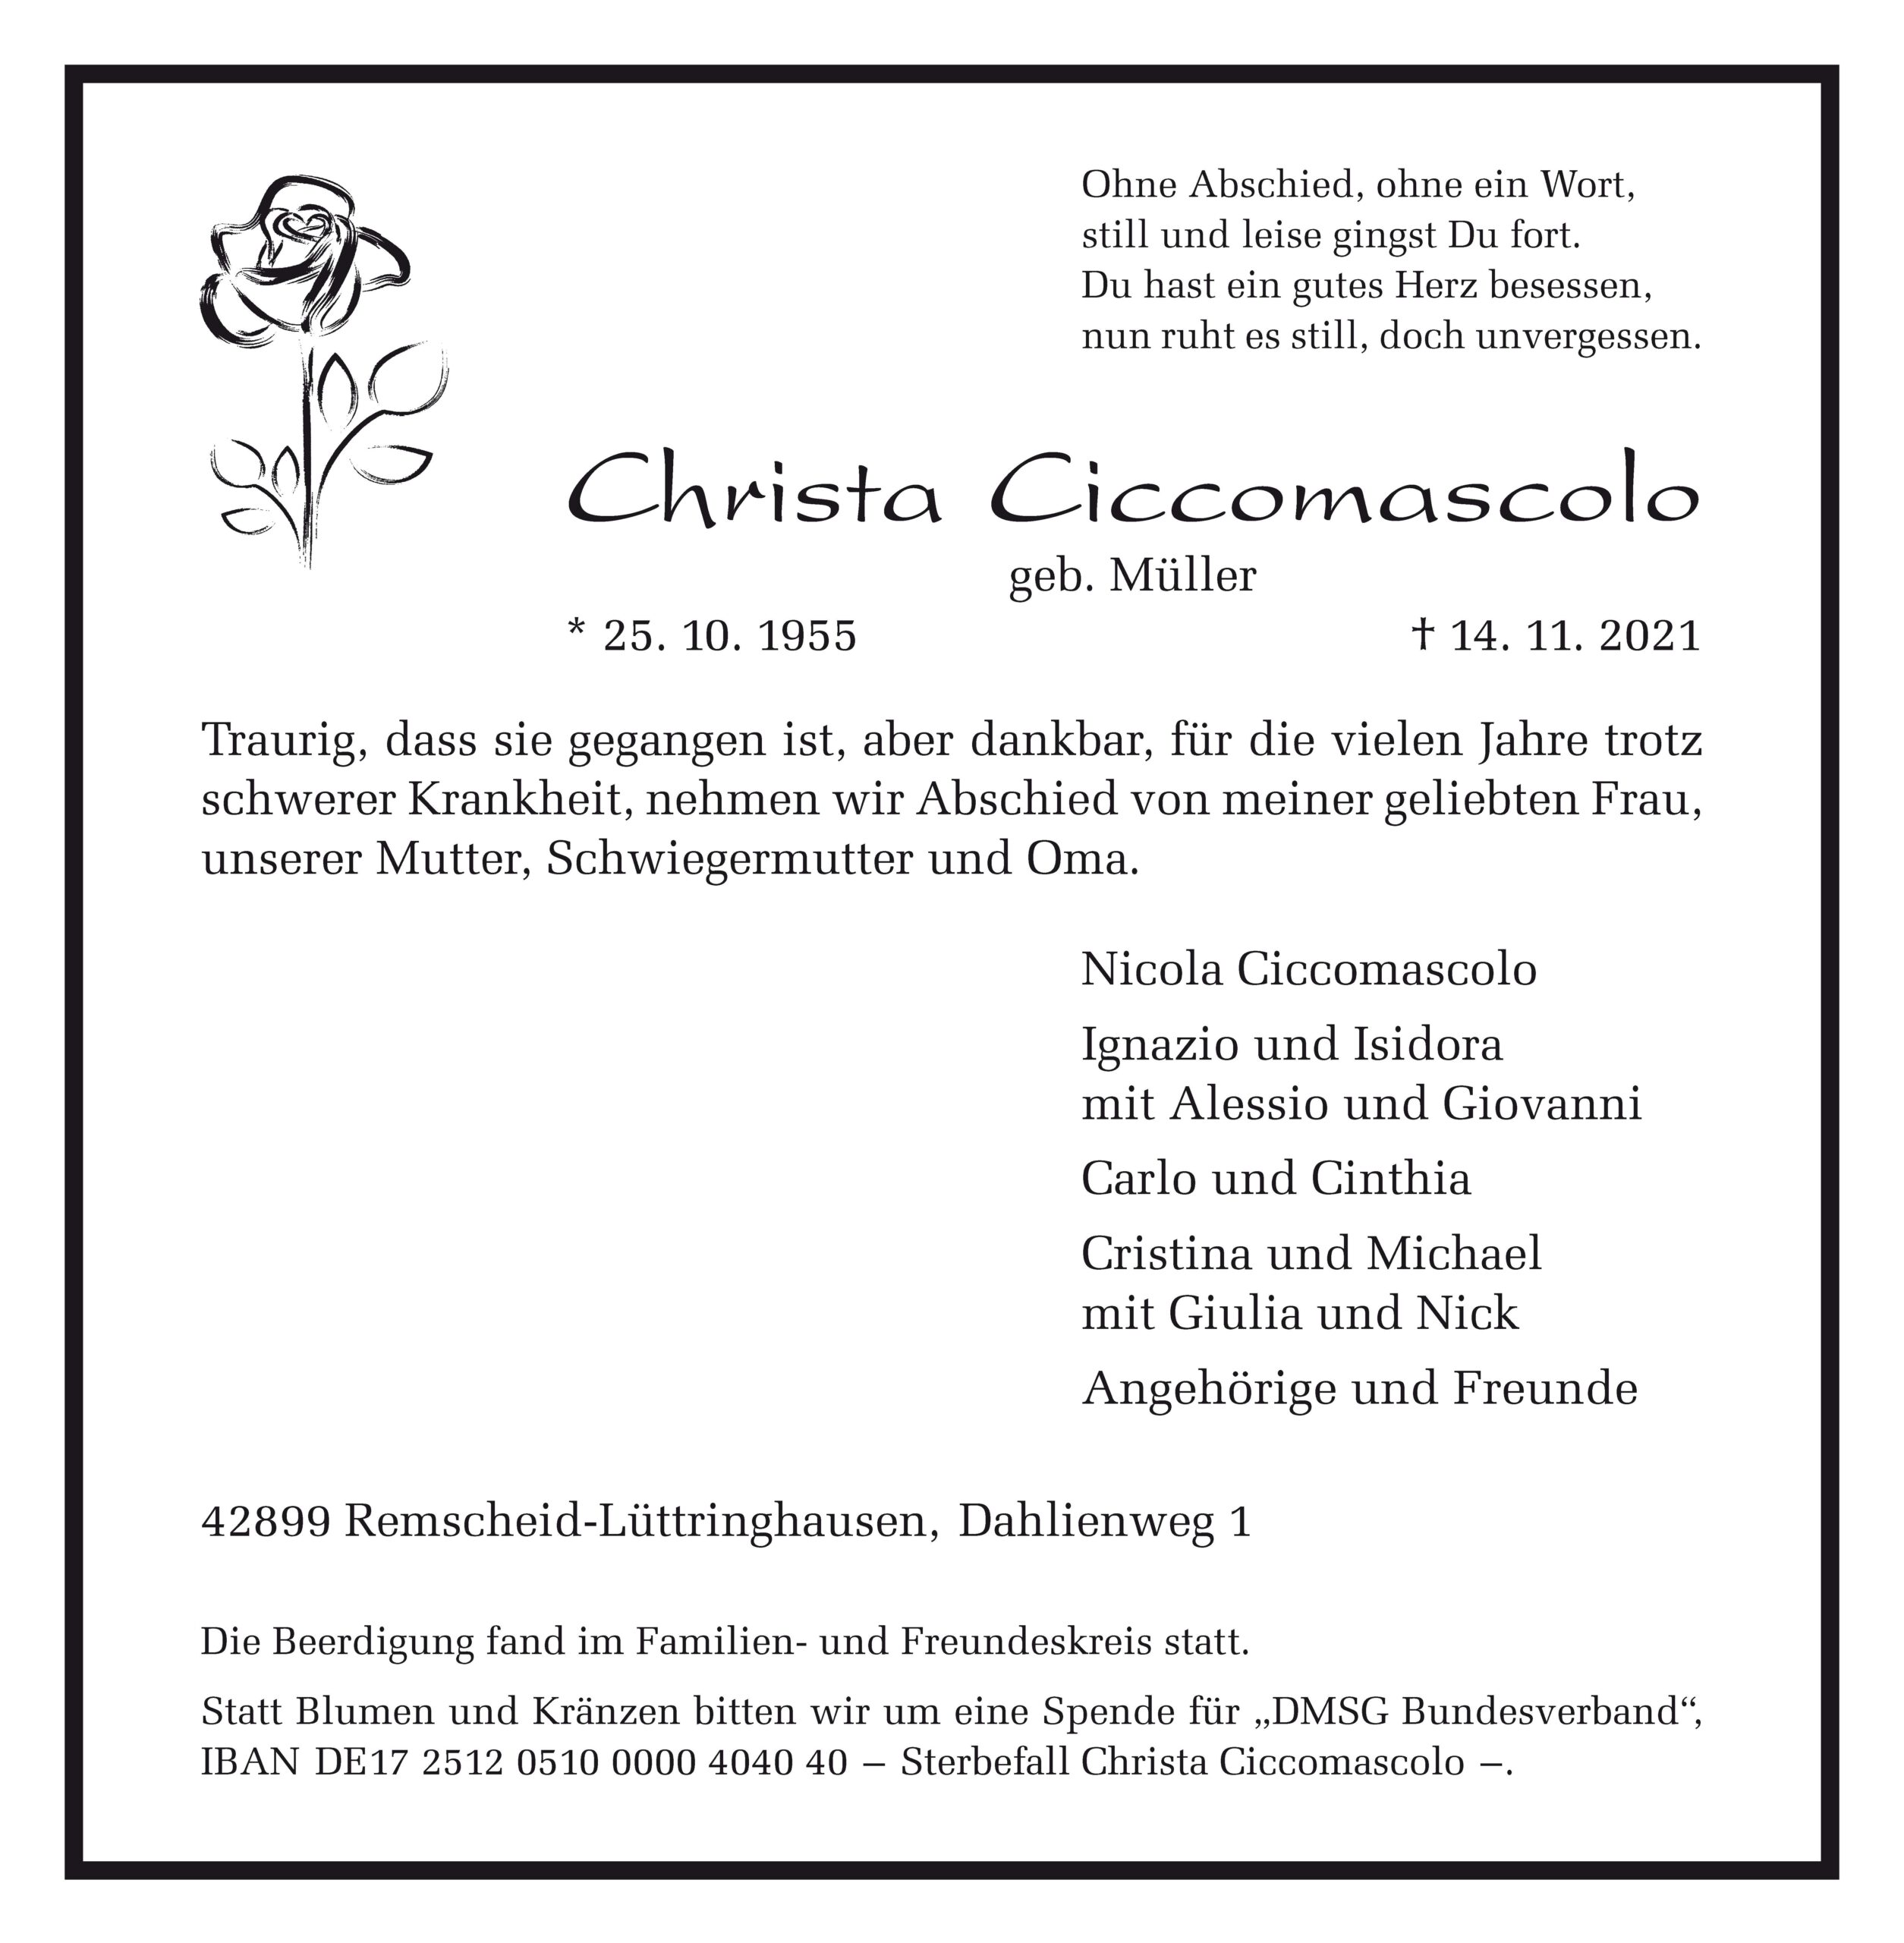 Christa Ciccomascolo